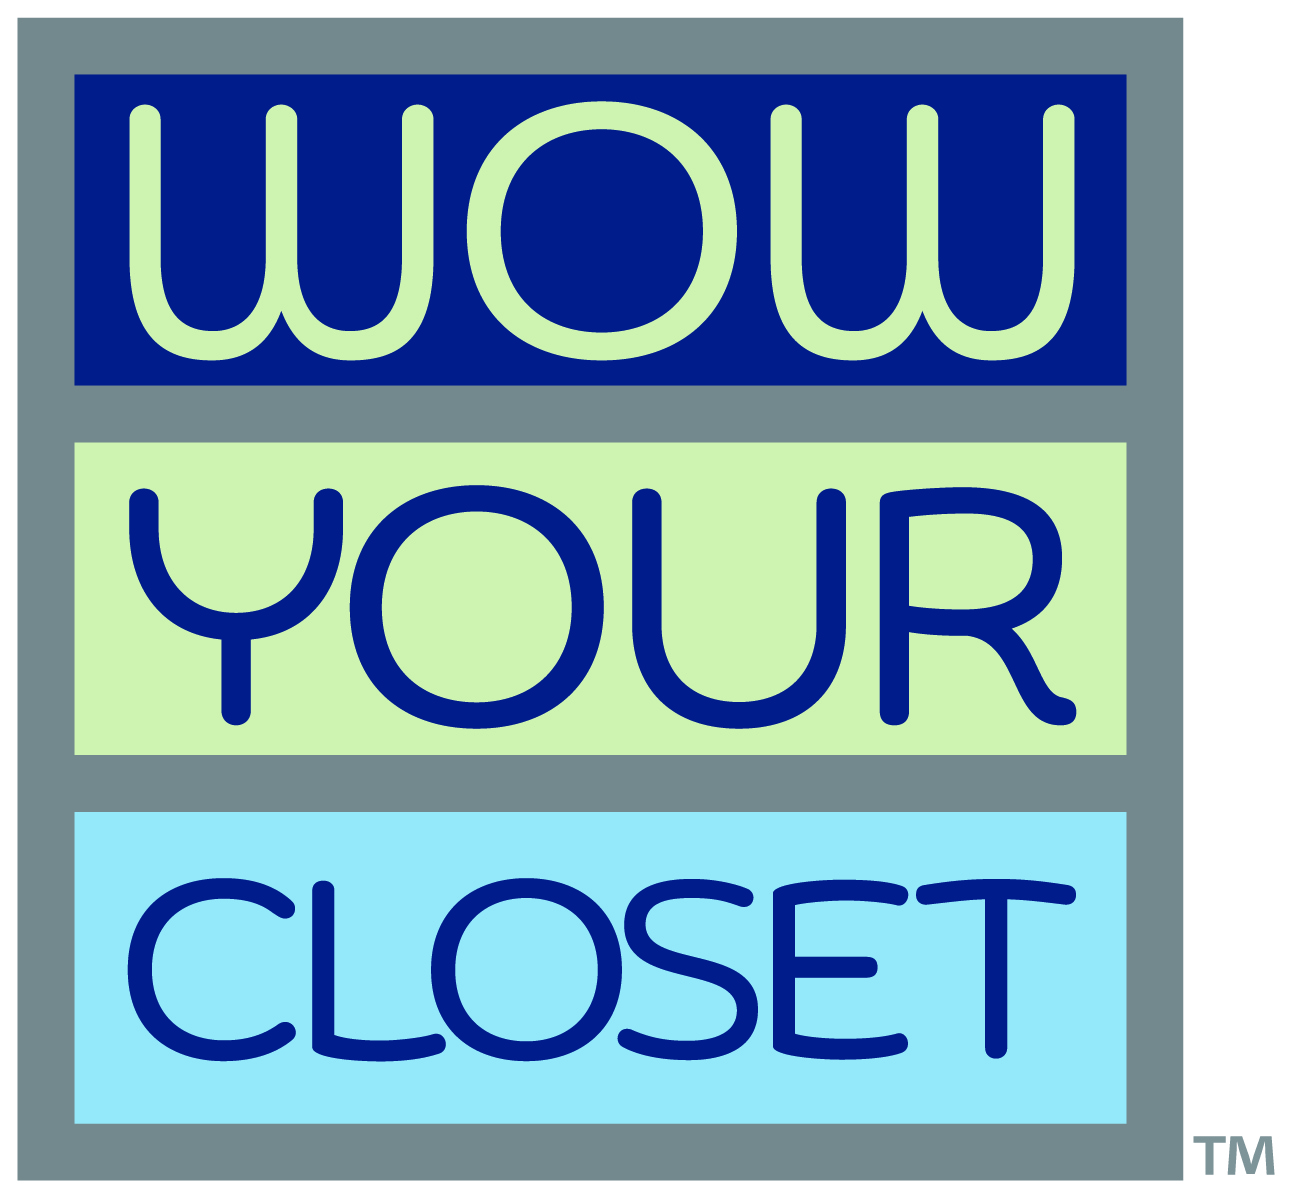 Wow Your Closet Logo